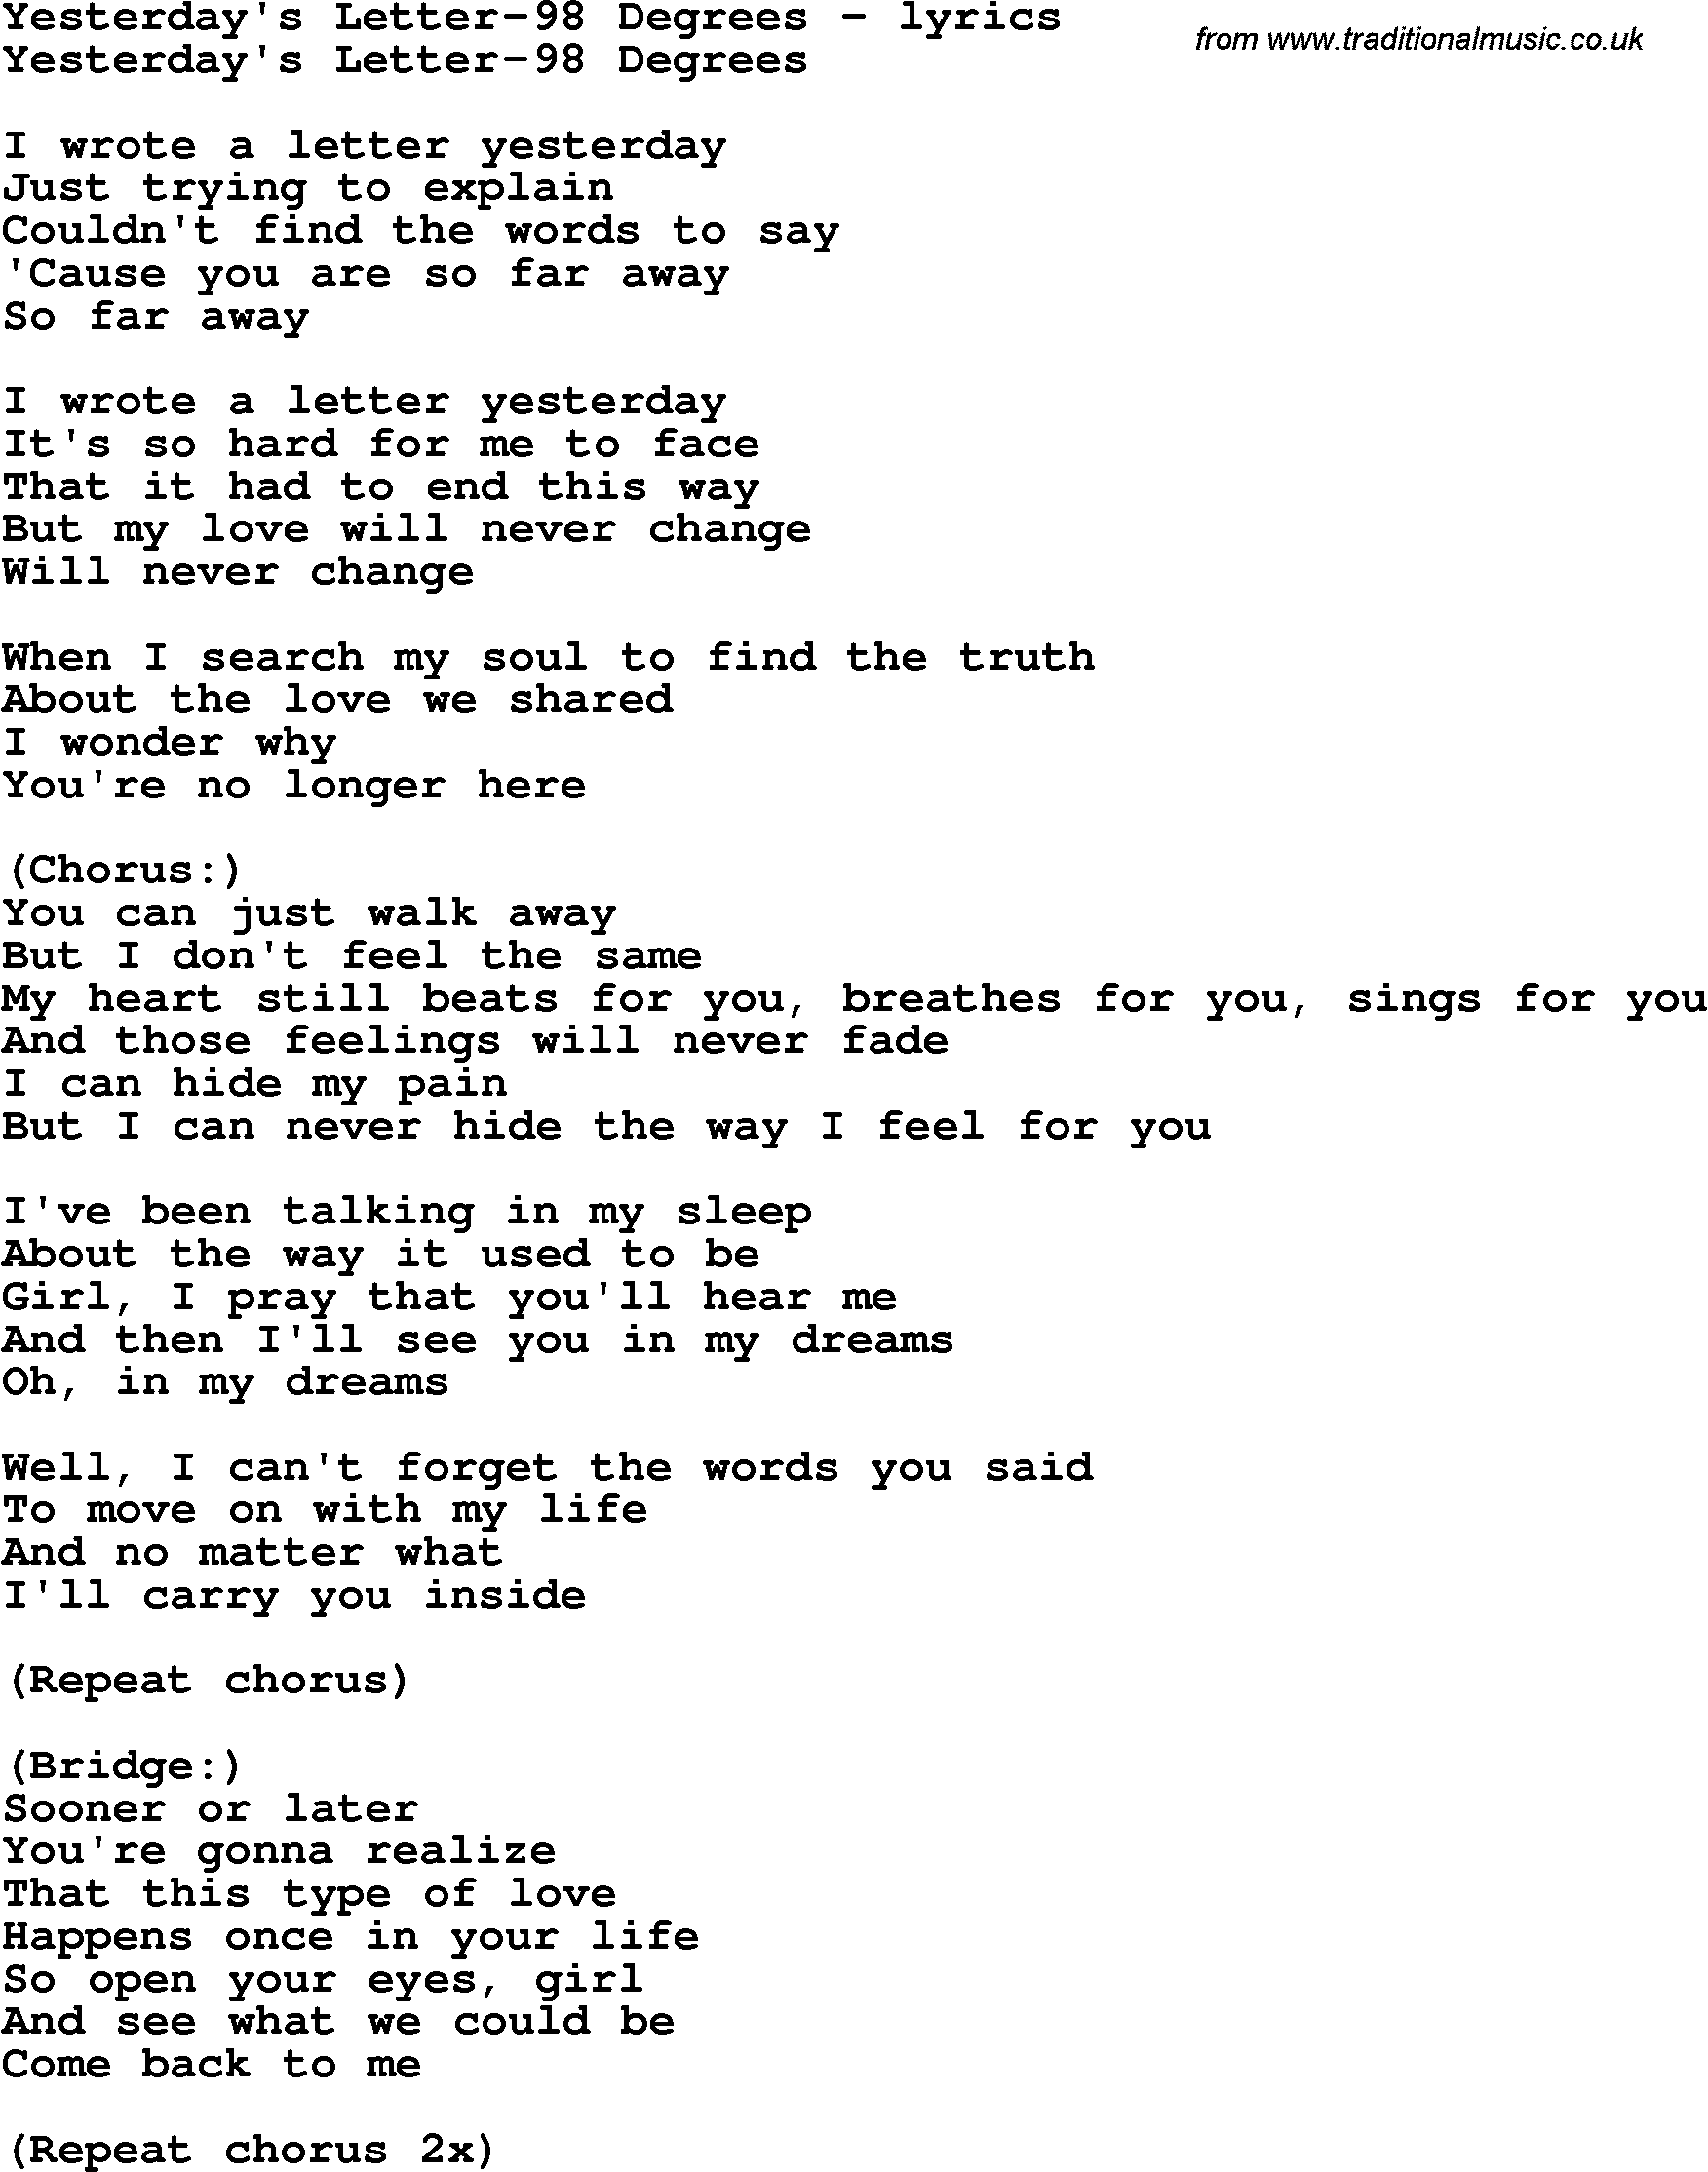 Love Song Lyrics for: Yesterday's Letter-98 Degrees